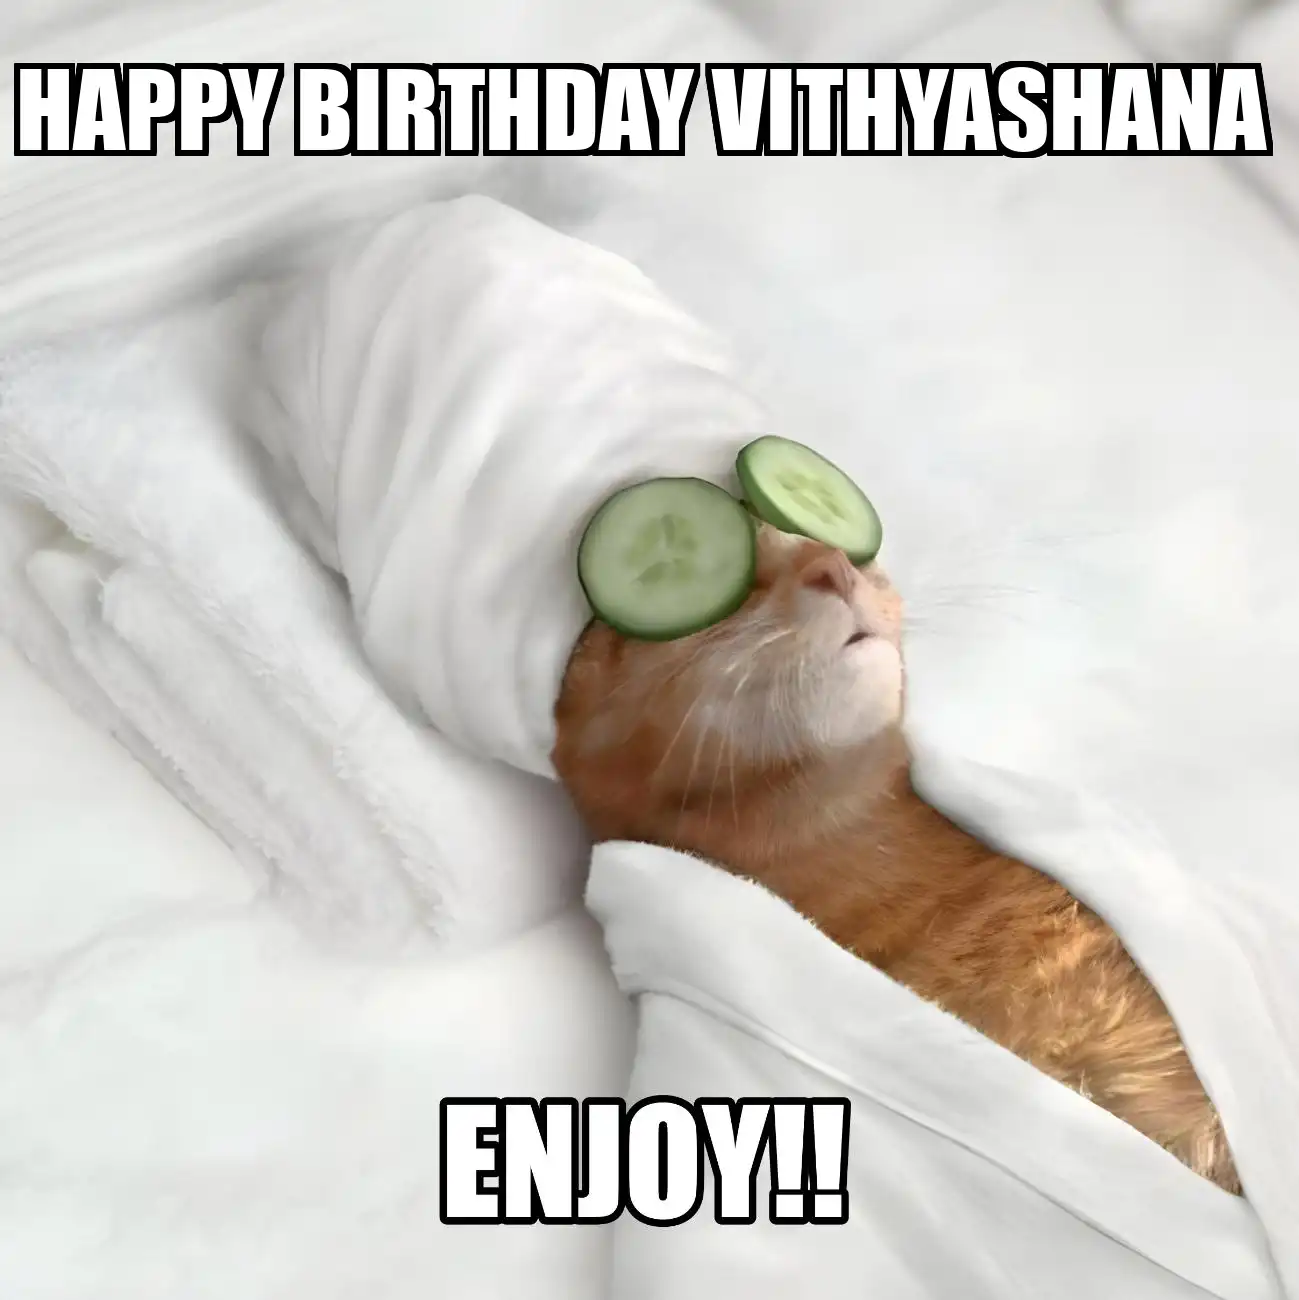 Happy Birthday Vithyashana Enjoy Cat Meme